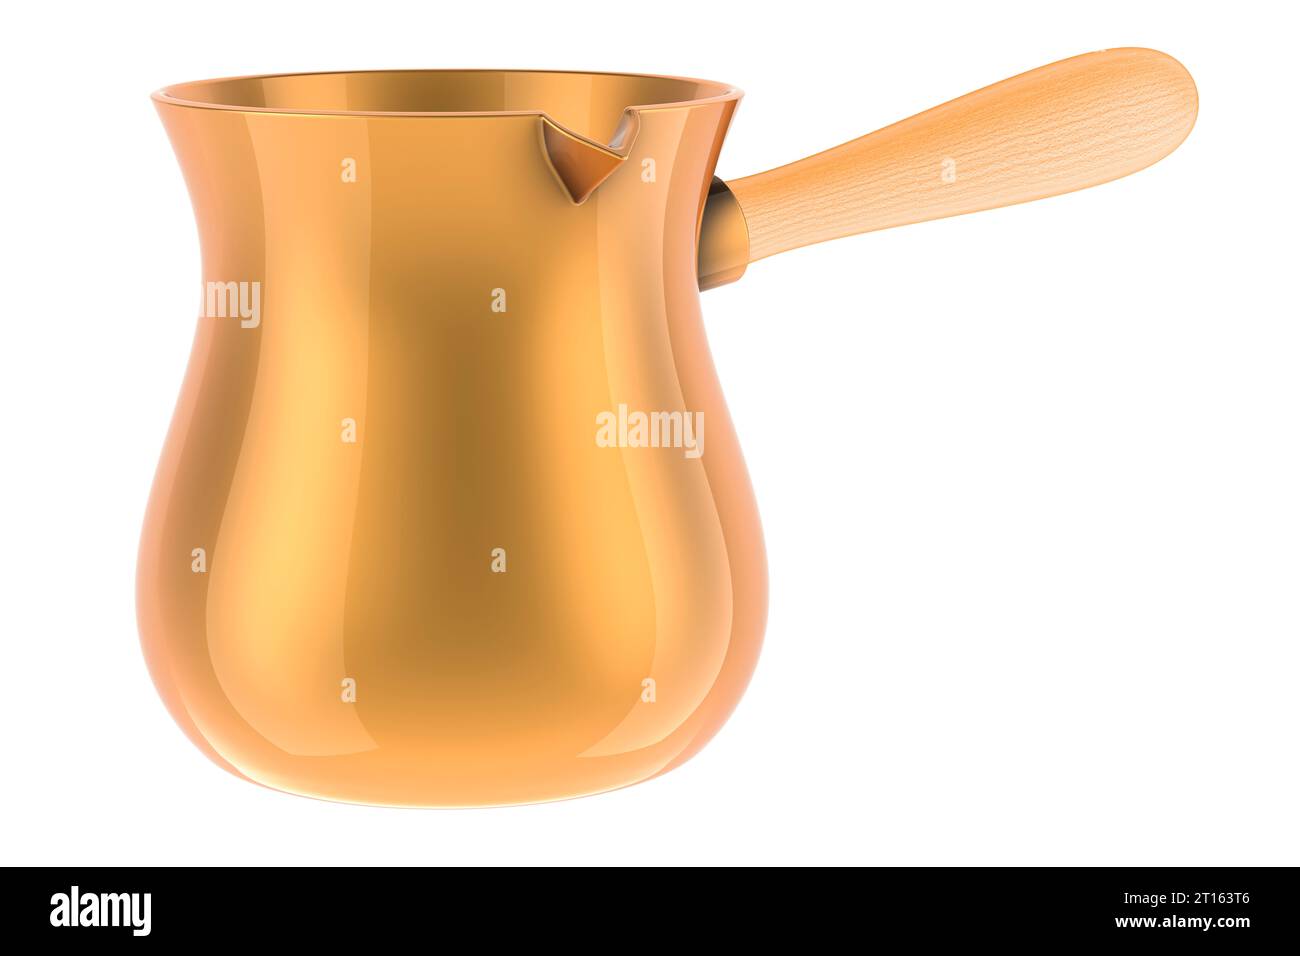 Caffettiera turca in rame, bronzo o ottone. Rendering 3D isolato su sfondo bianco Foto Stock